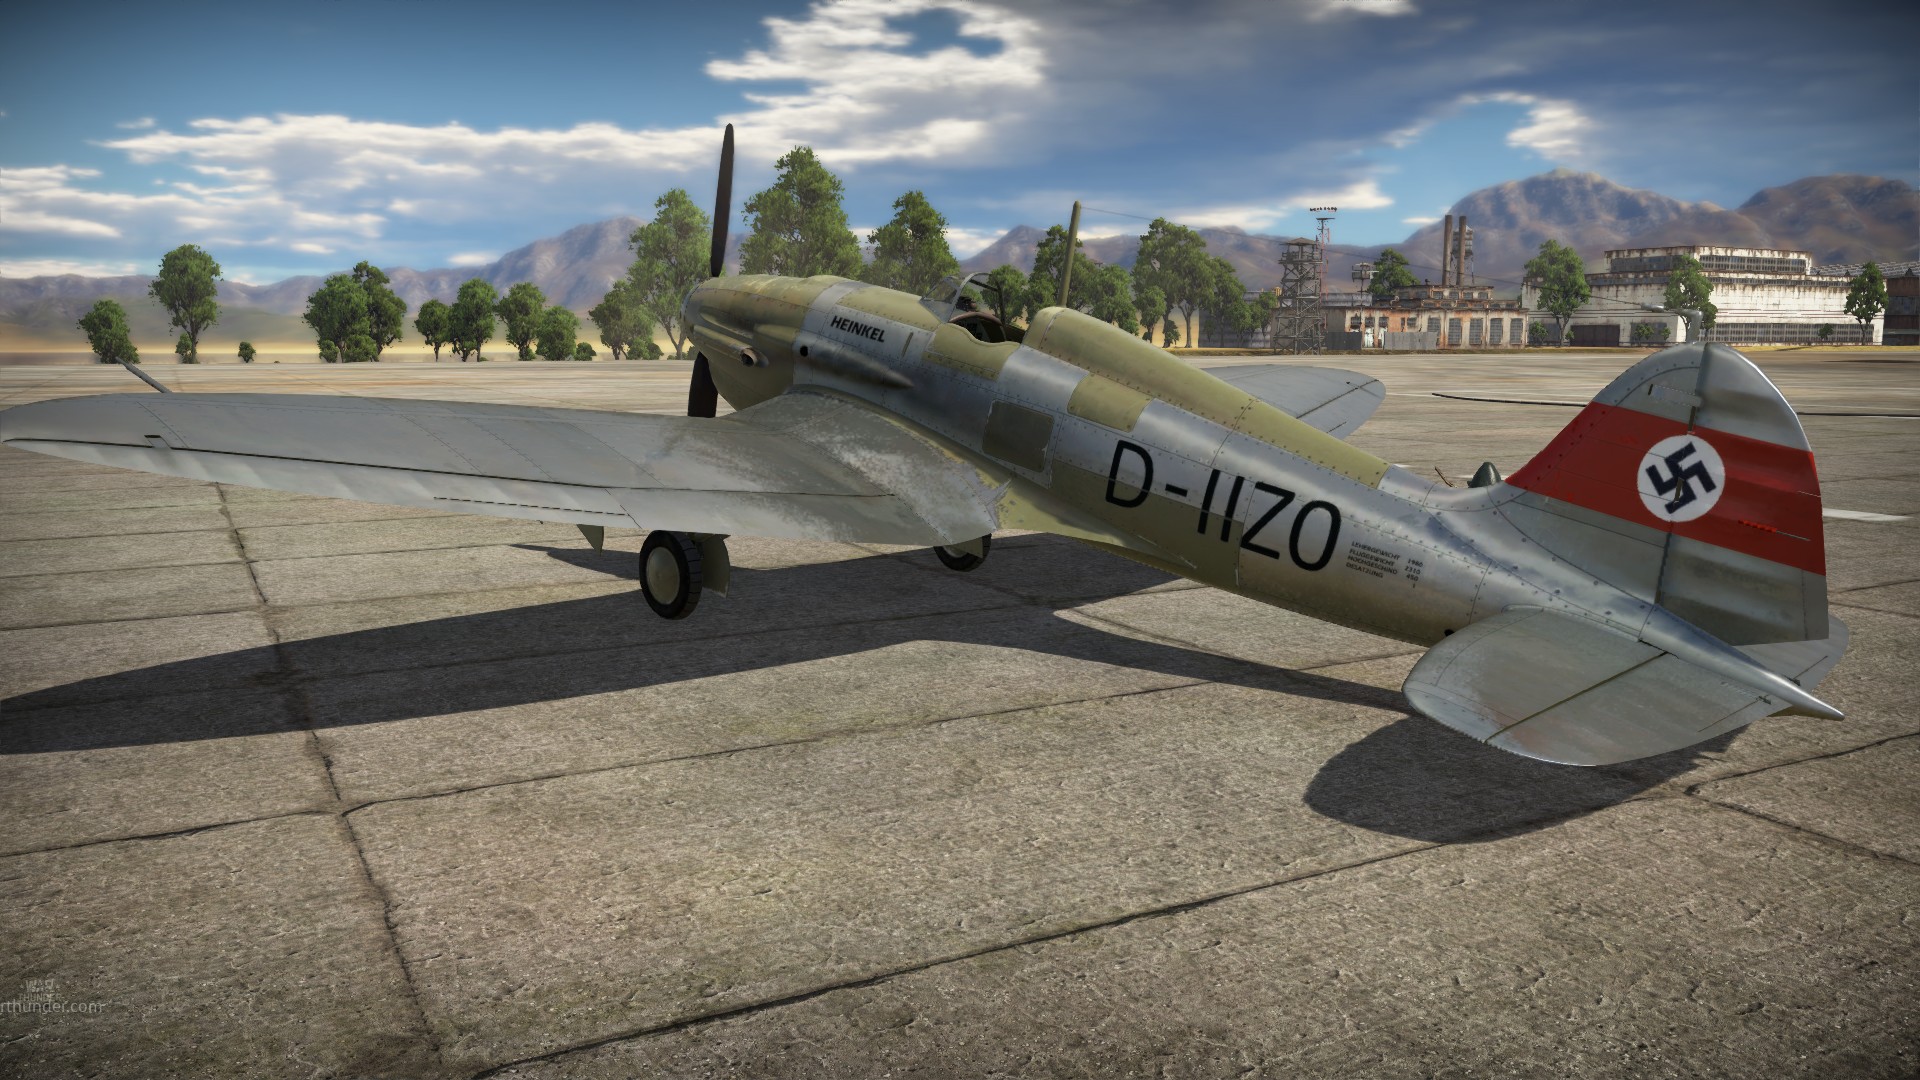 V 112. He 112 v-5. Хейнкель he112. Heinkel he 112. Heinkel he 5.